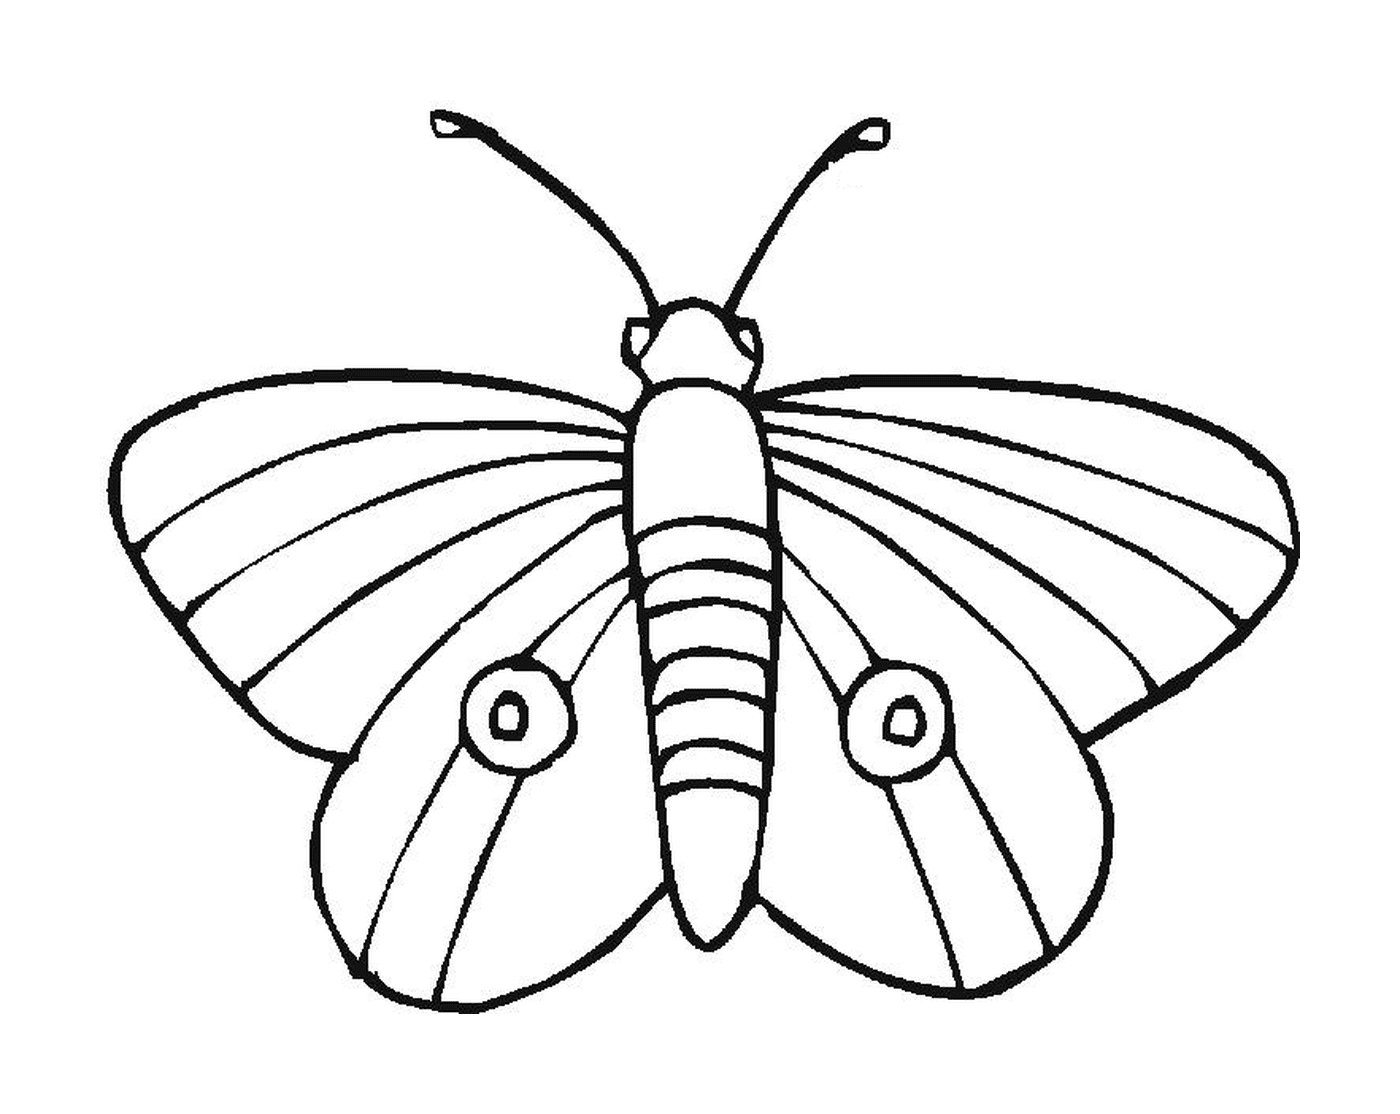  带有独特图案的重复的蝴蝶 